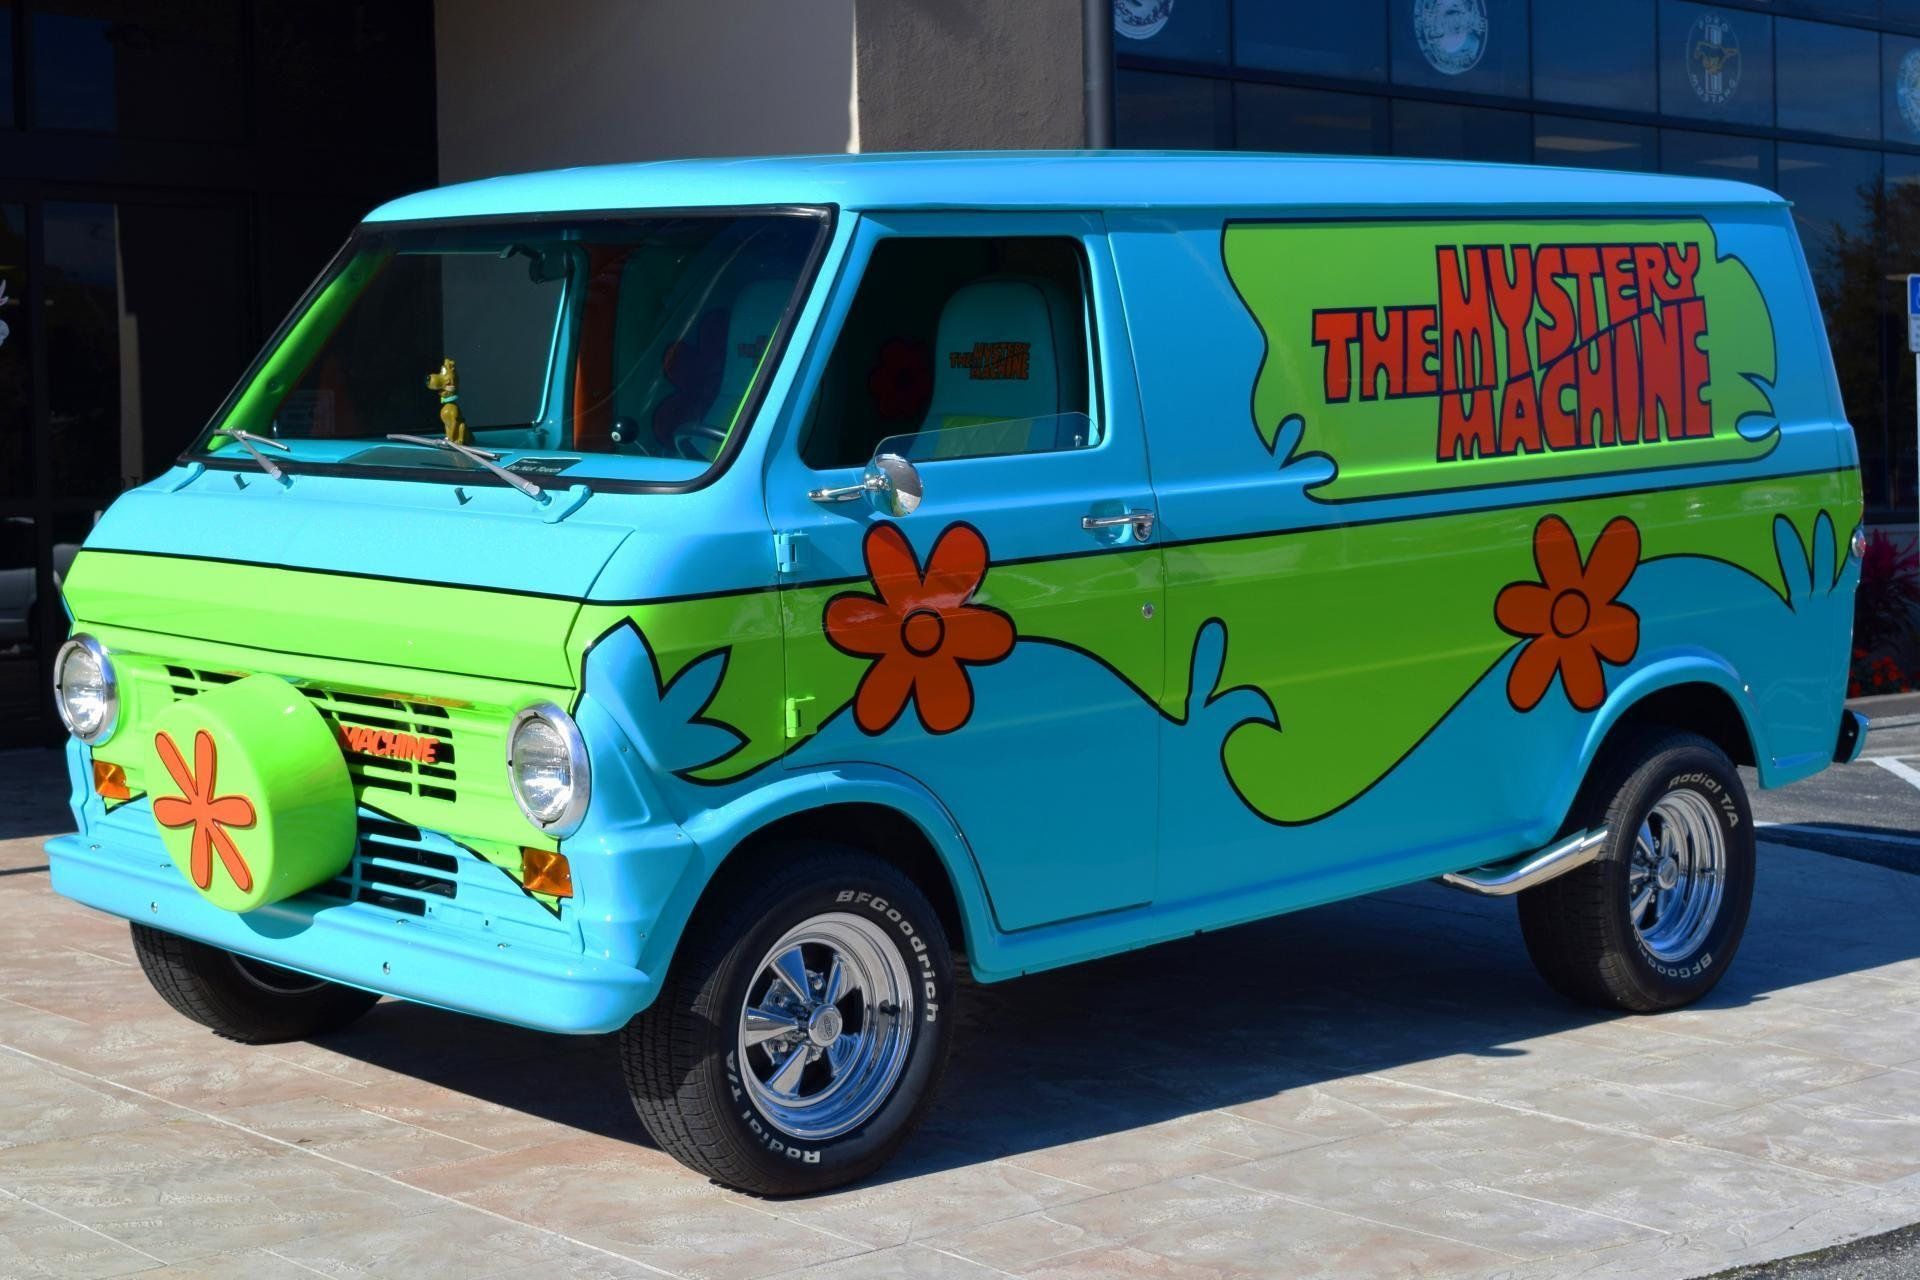 1966 GMC Handi-Van Mystery Machine (Scooby-Doo)